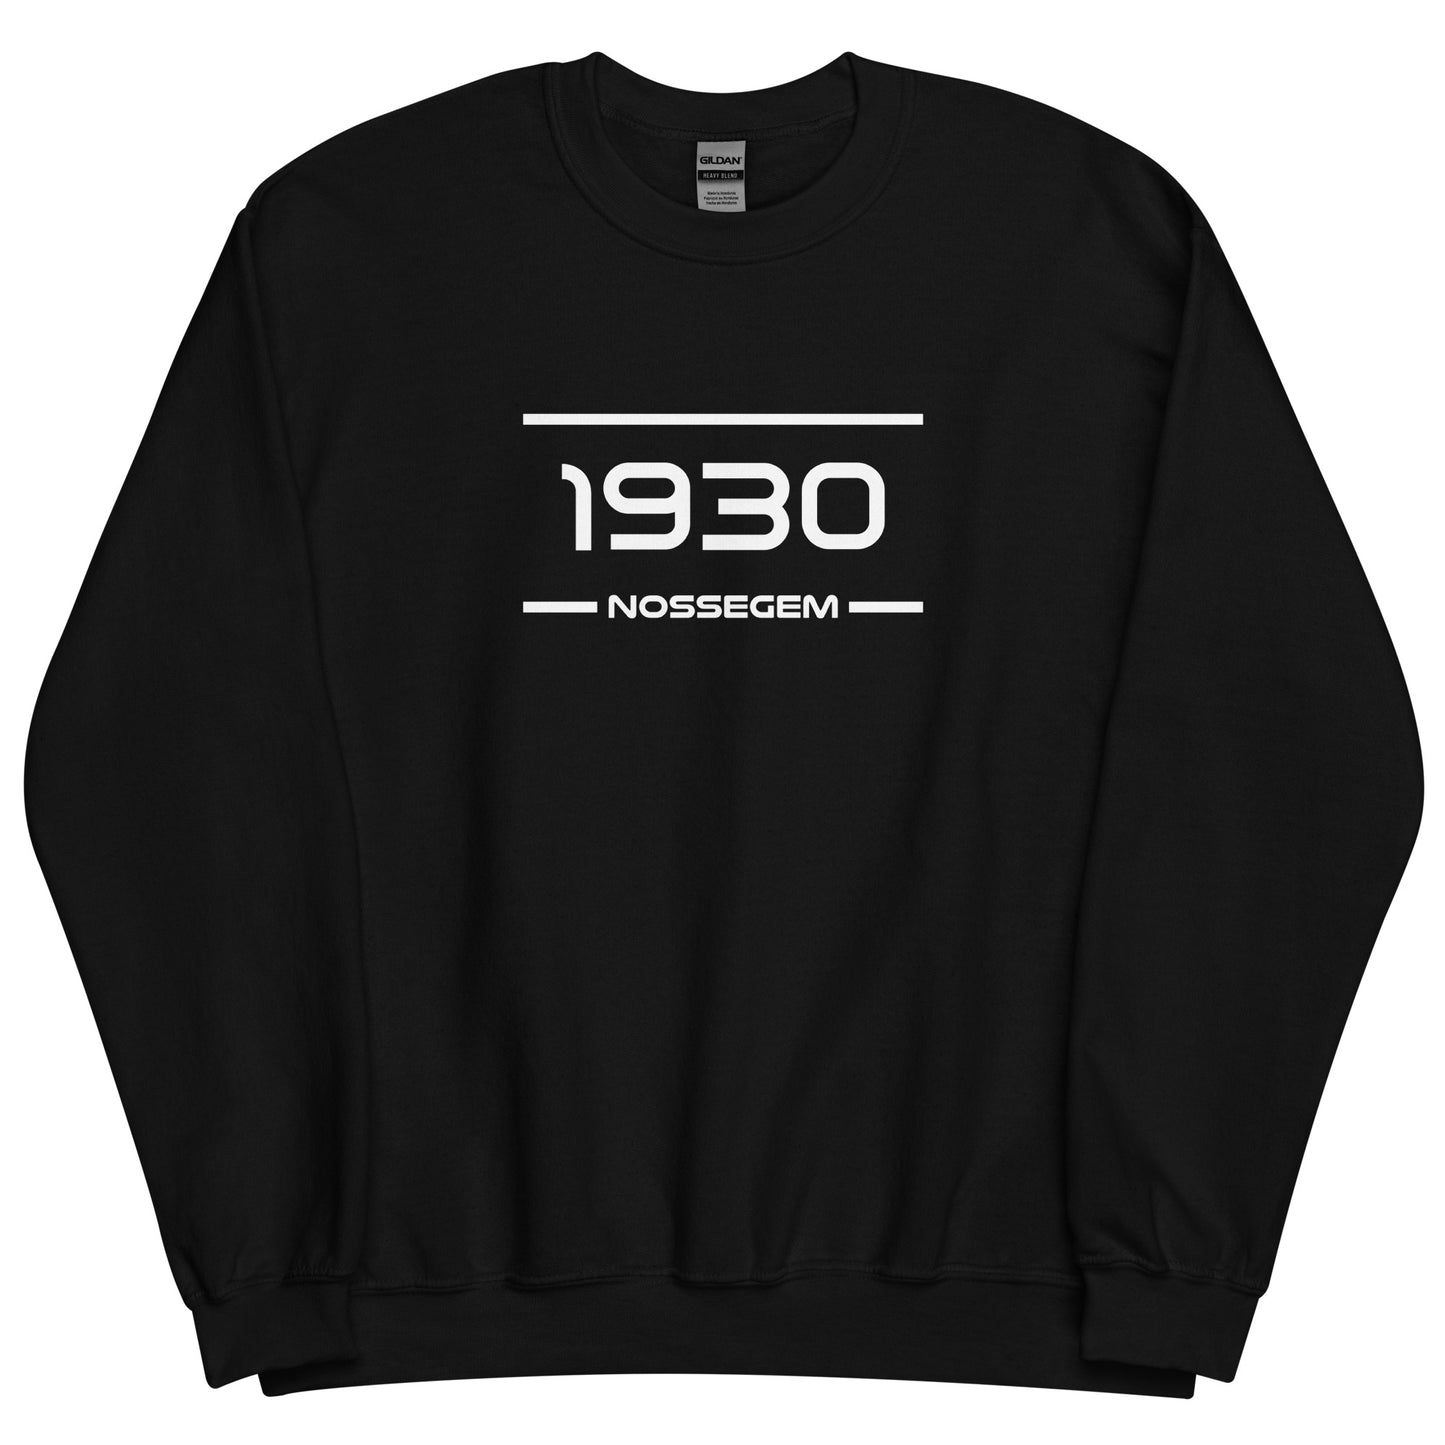 Sweater - 1930 - Nossegem (M/V)